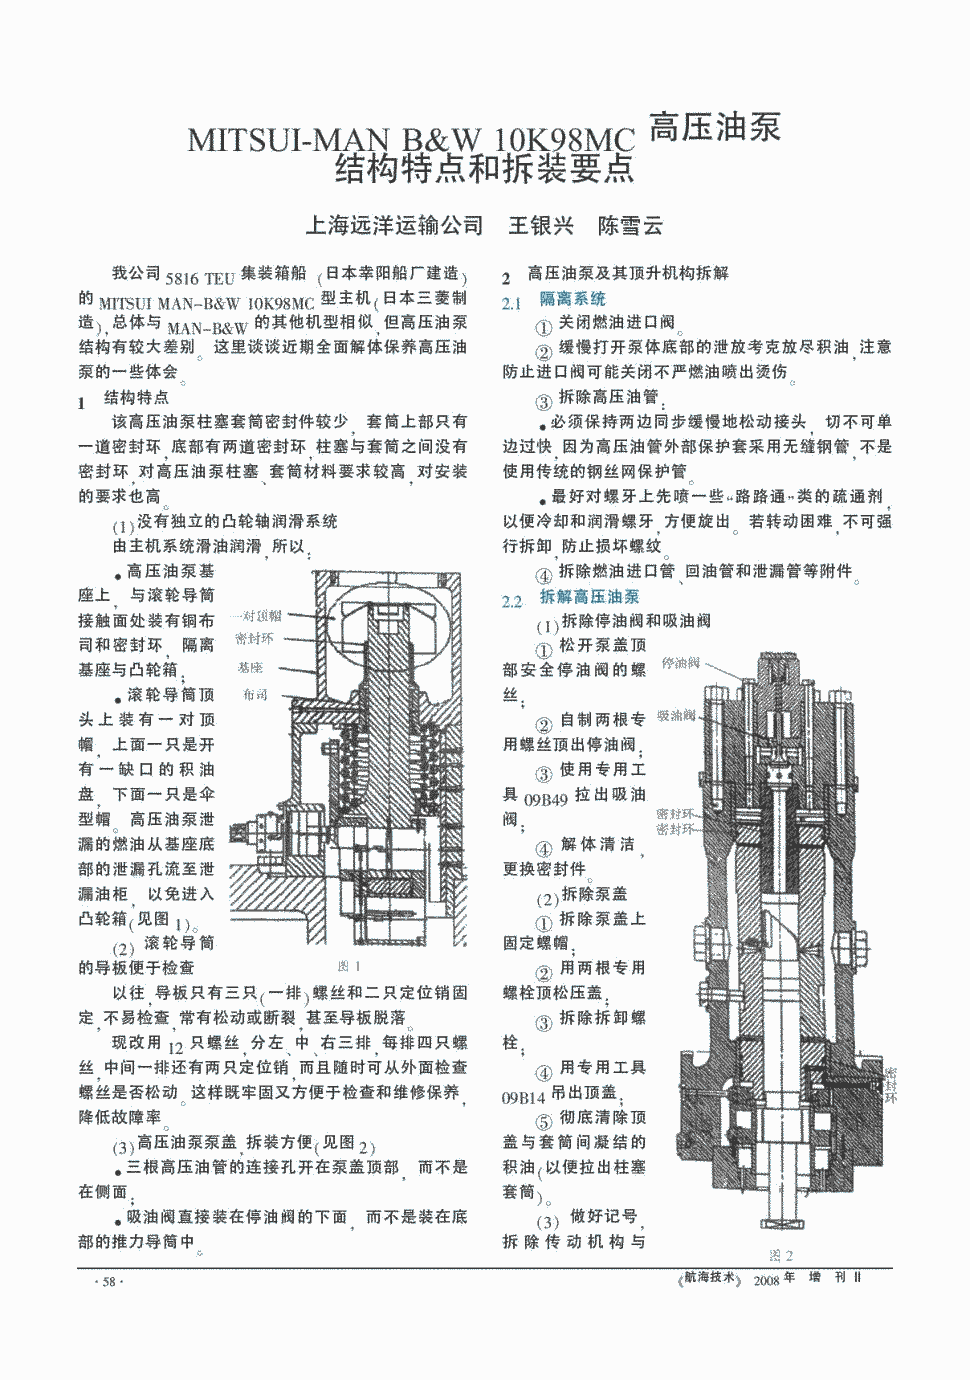 主机(日本三菱制造),总体与man-b&w的其他机型相似,但高压油泵结构有